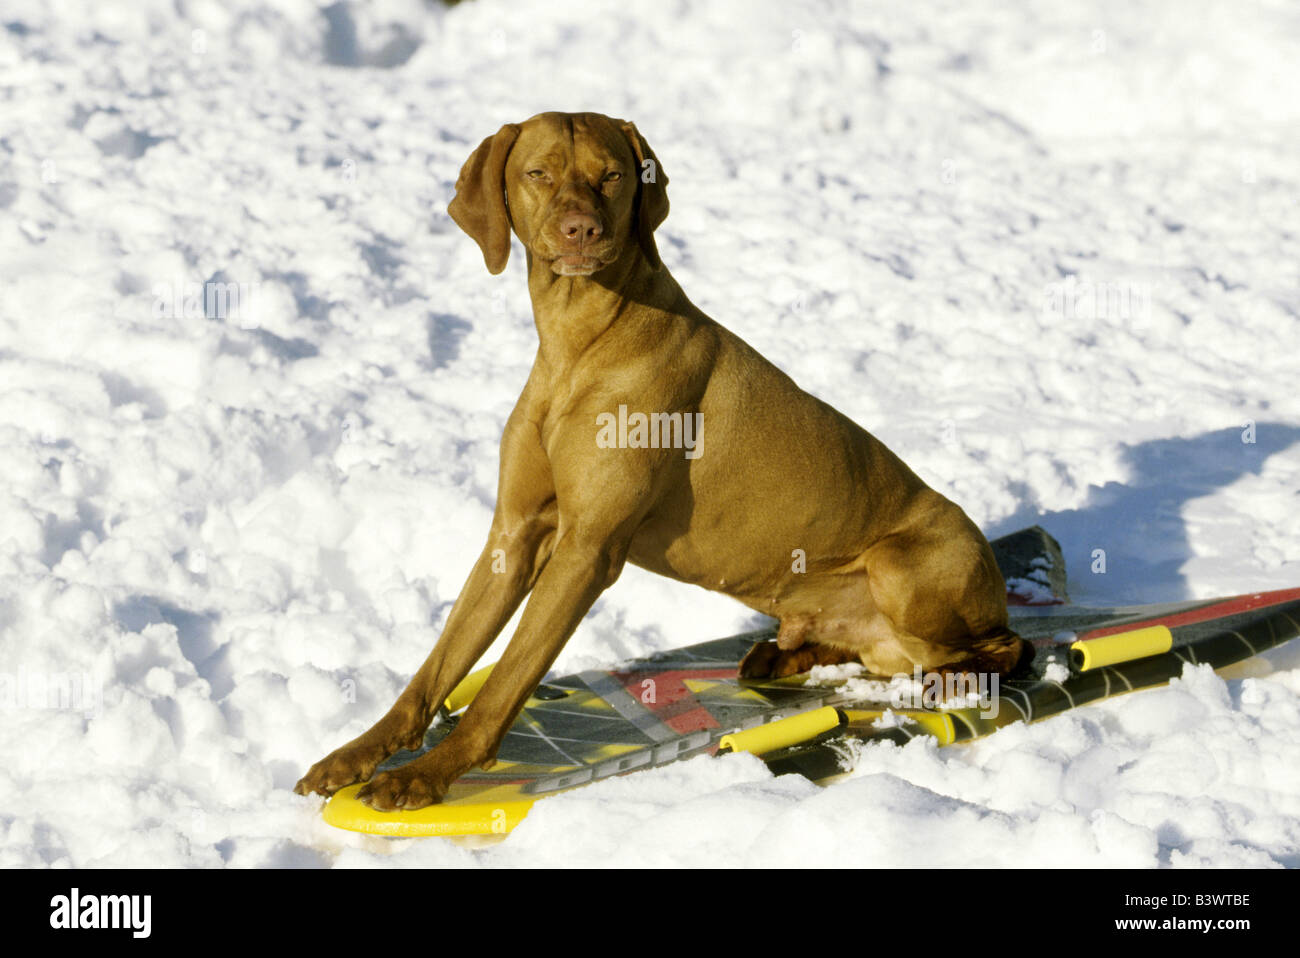 Vizsla dog sitting on a snowboard Stock Photo - Alamy